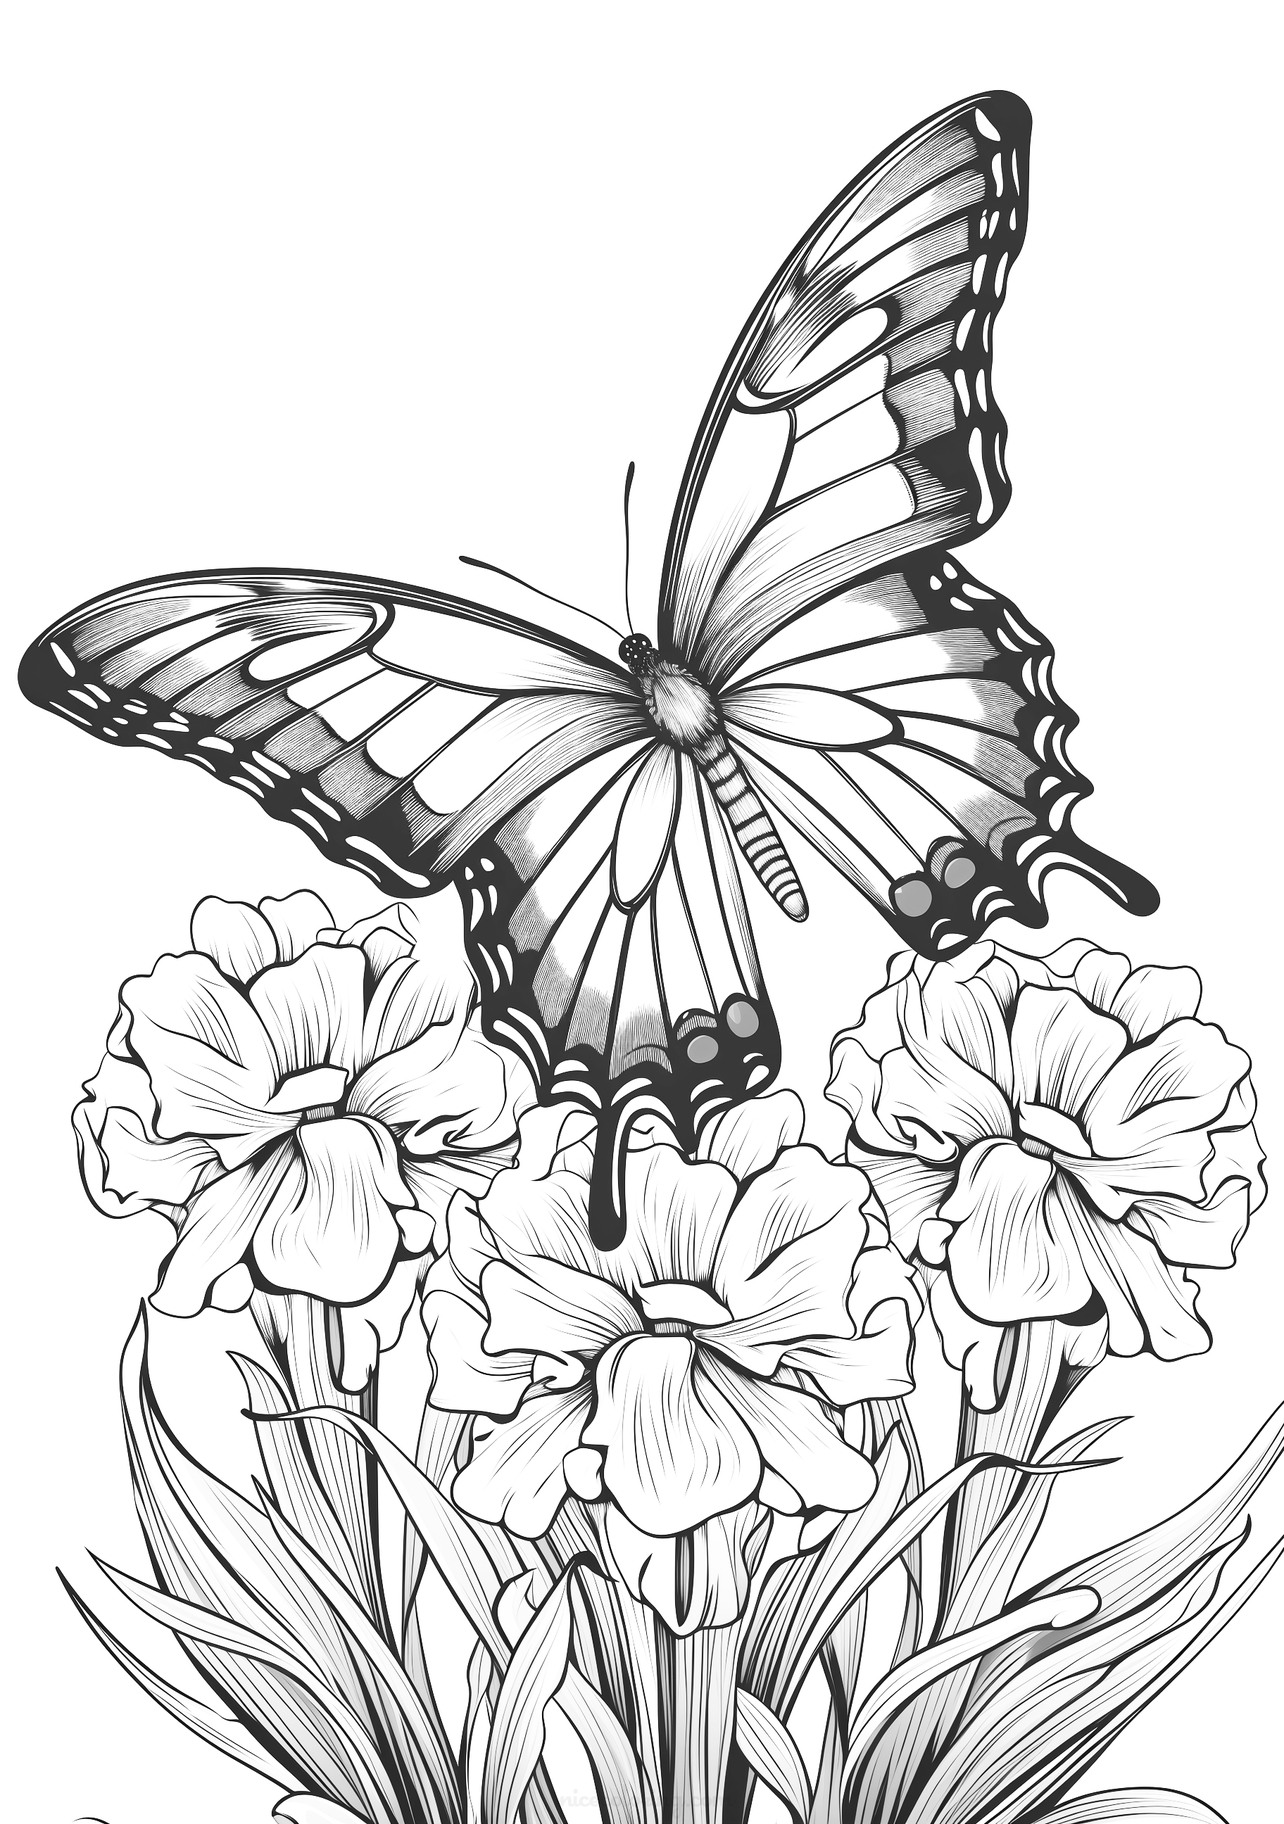 Dibujo de una mariposa posada sobre flores para colorear